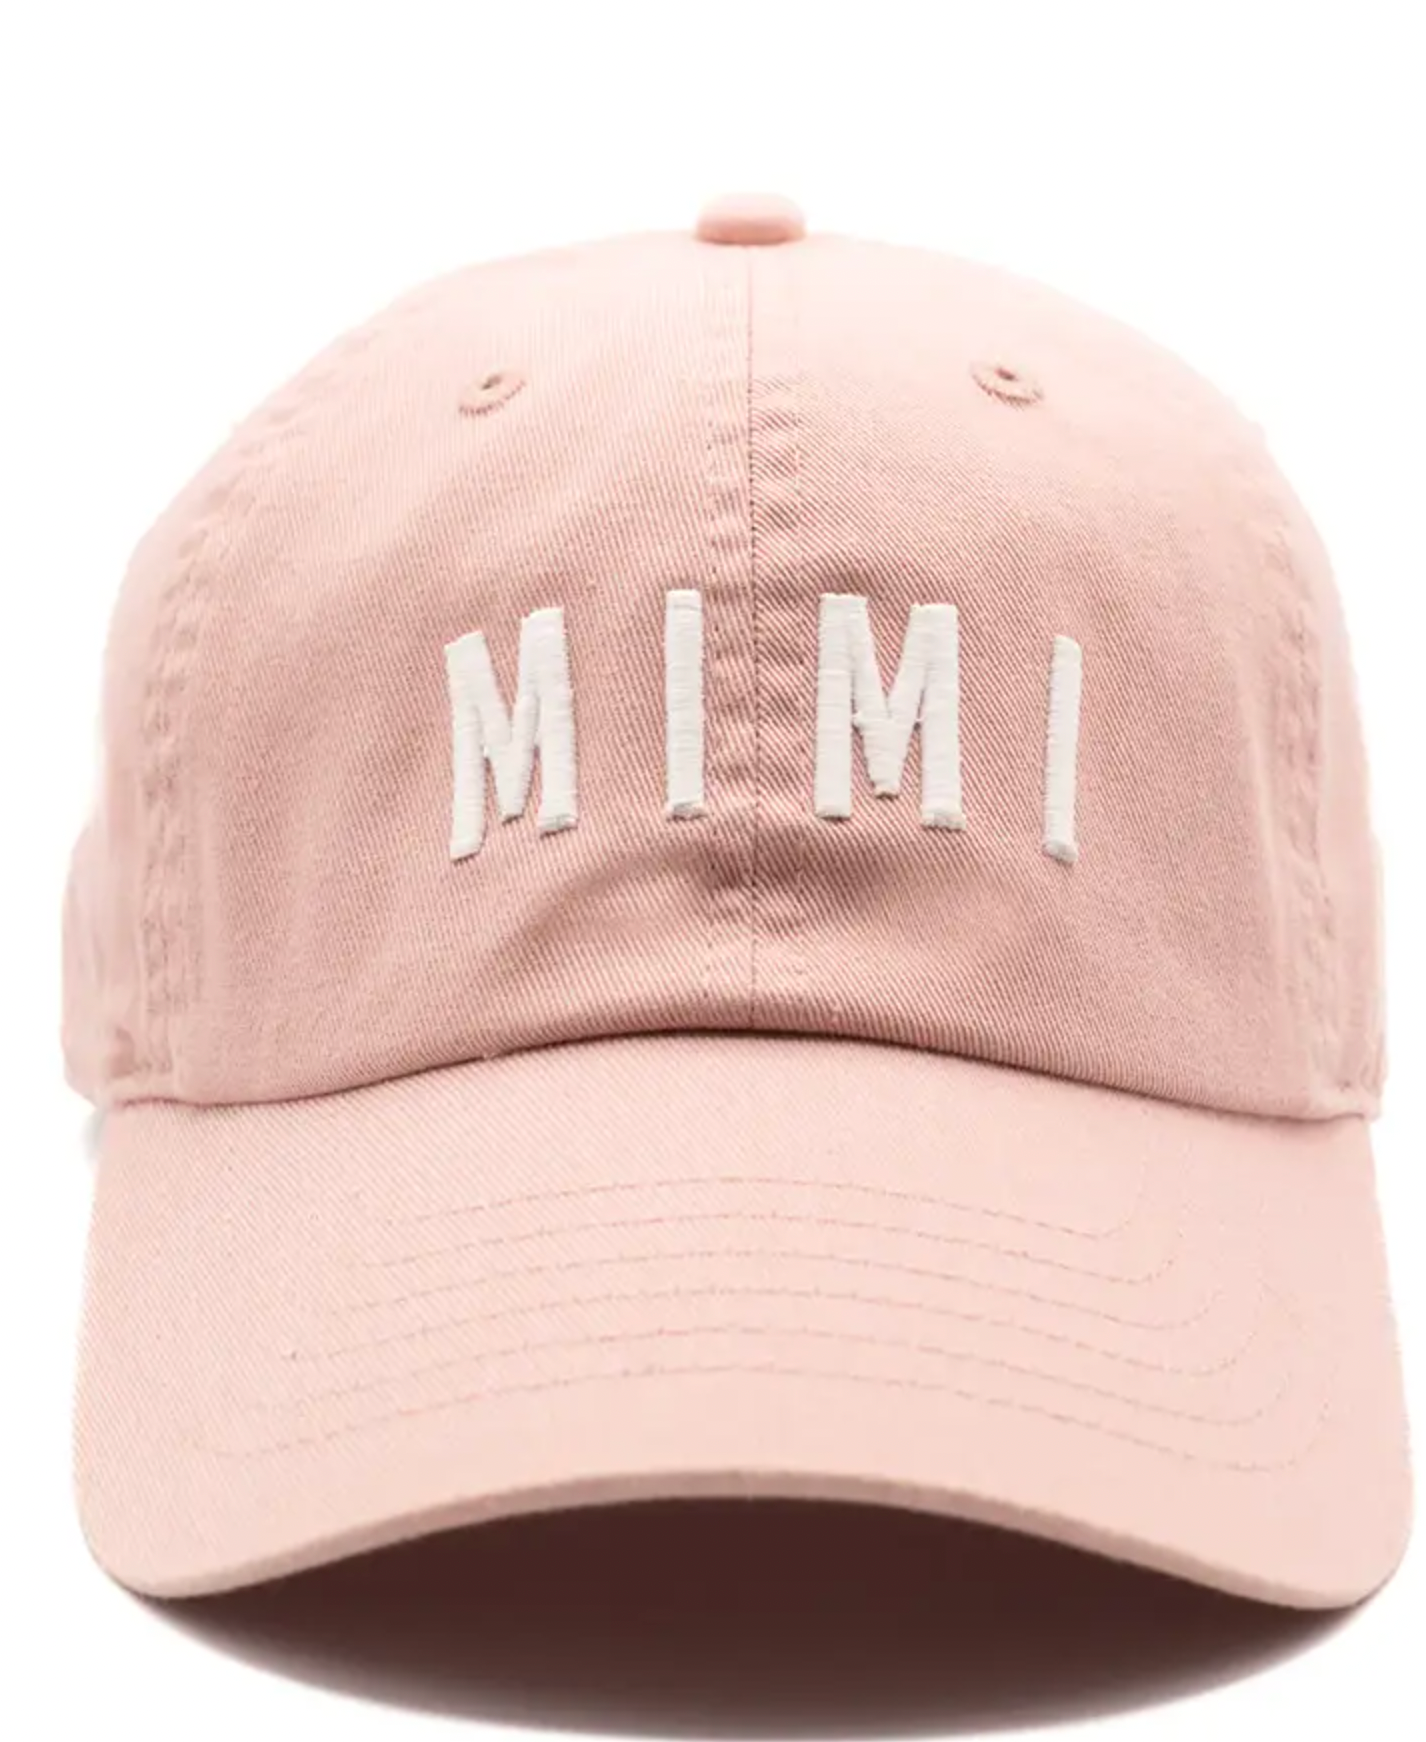 Mimi Baseball Cap, Dusty Rose